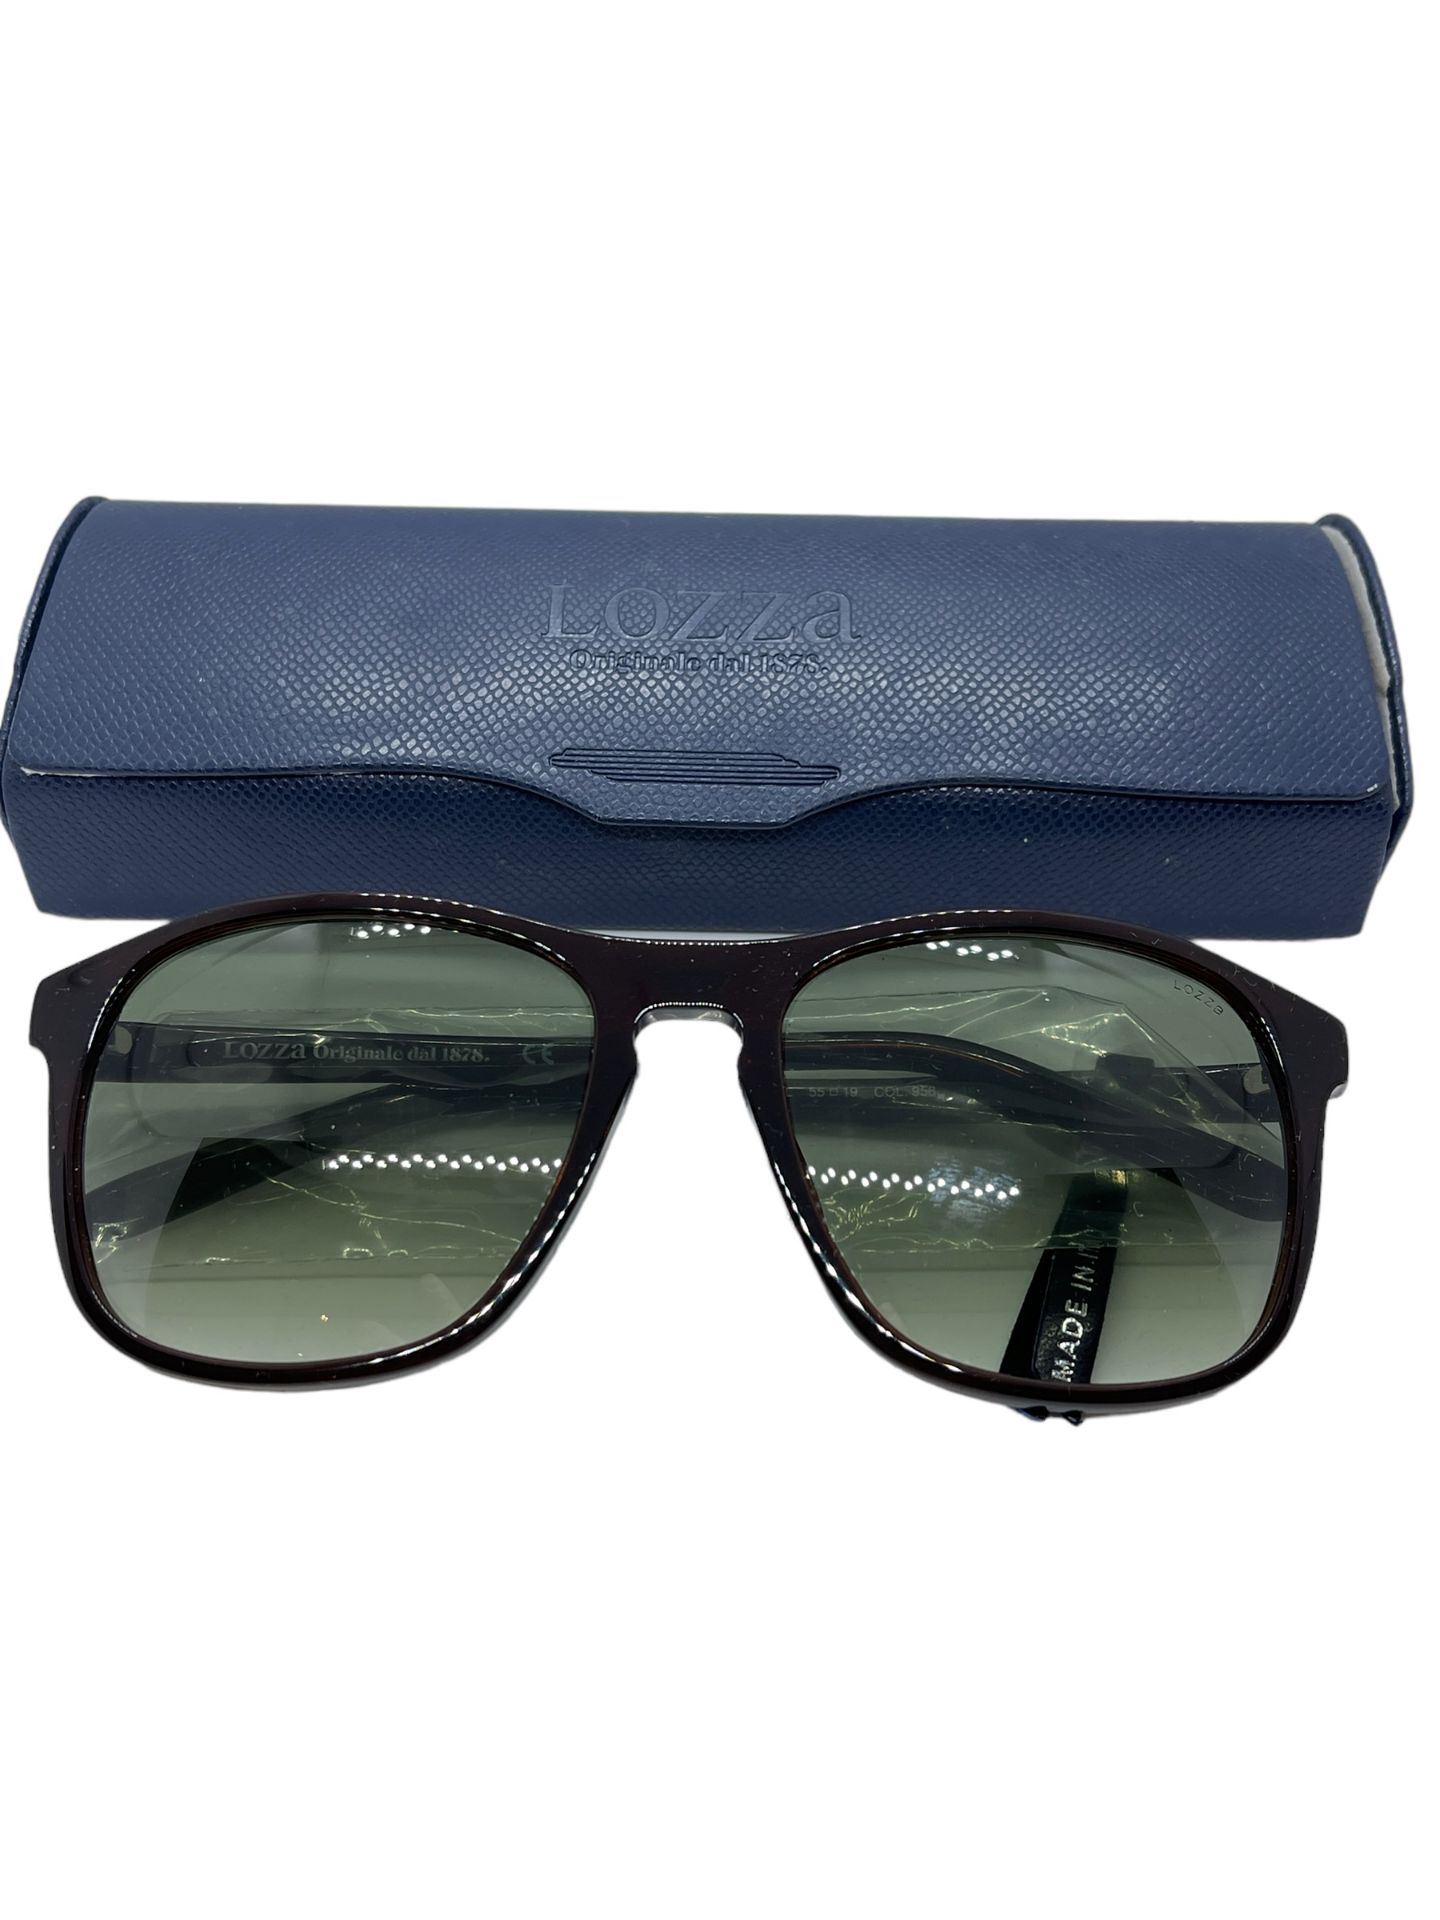 Lozza men's sunglasses boxed brand new - Image 4 of 4